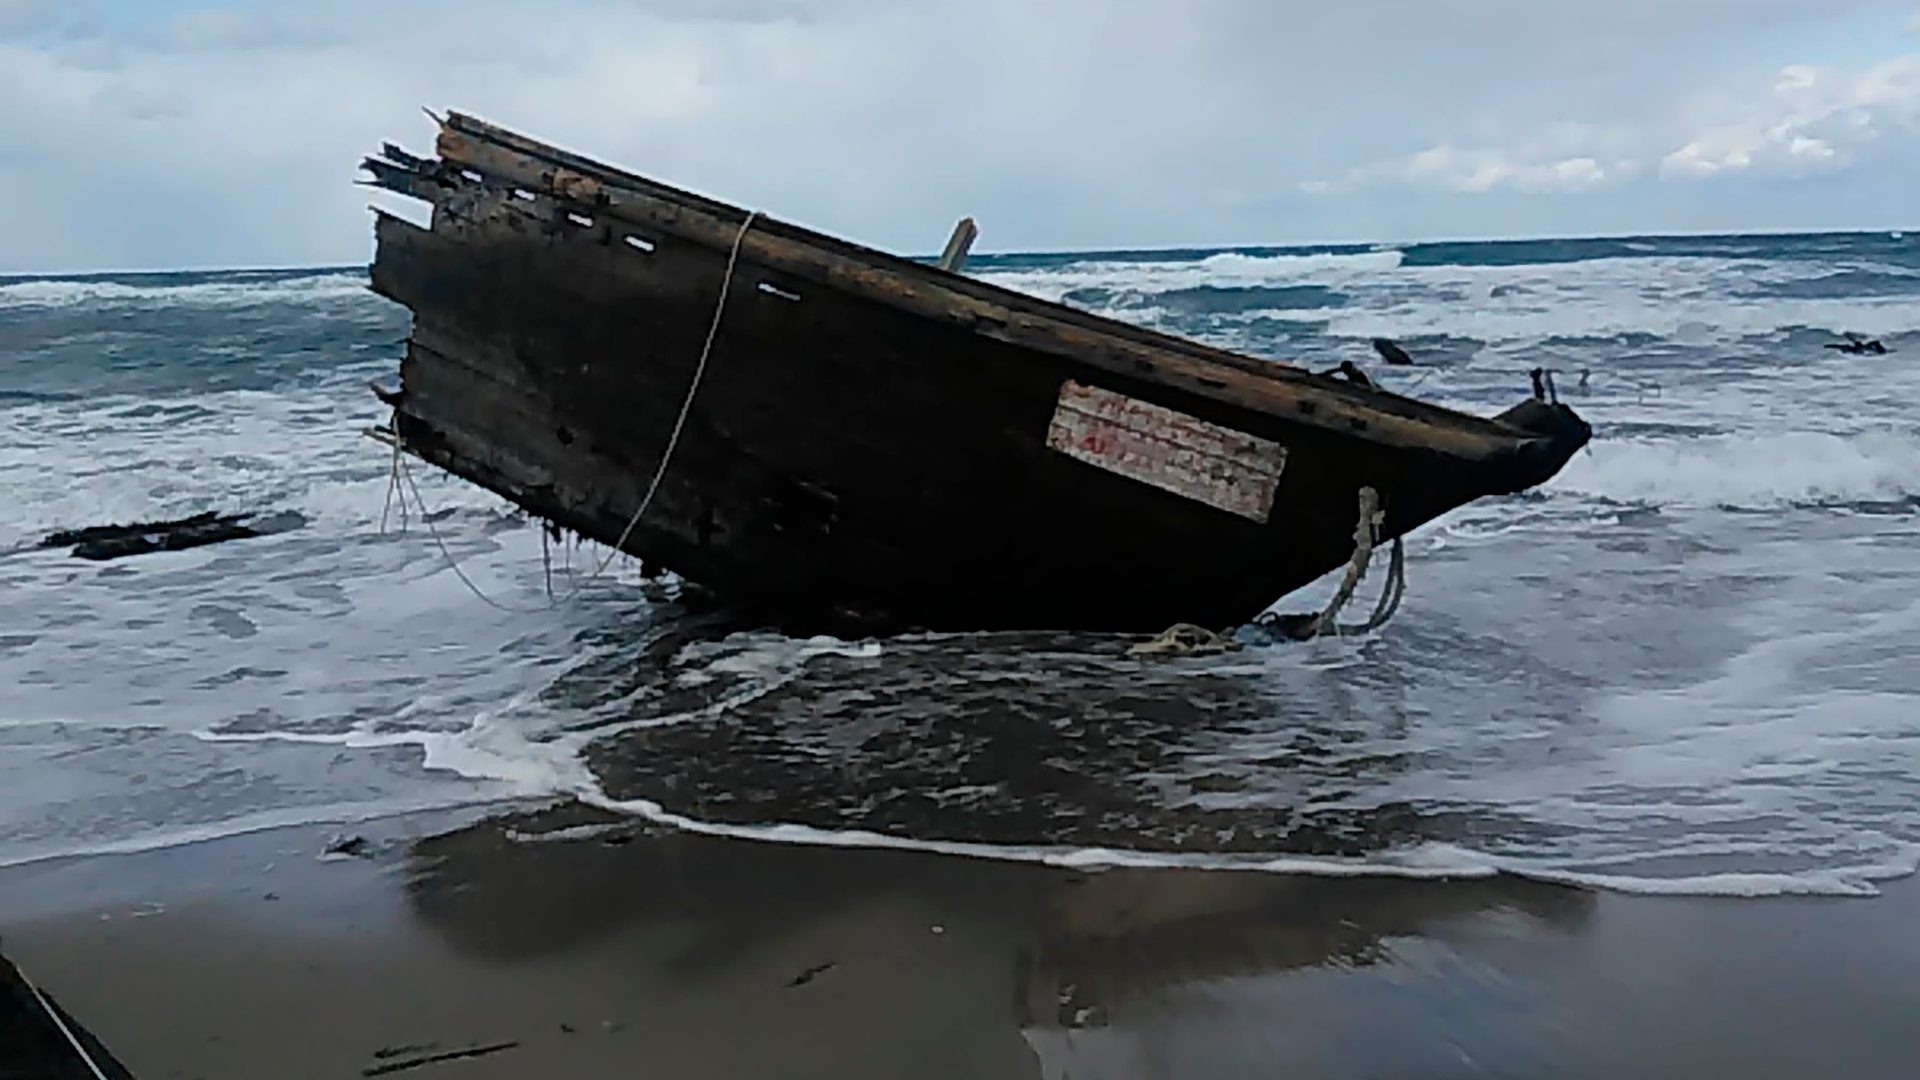 Llega a las costas de Japón un barco fantasma con cabezas y esqueletos humanos